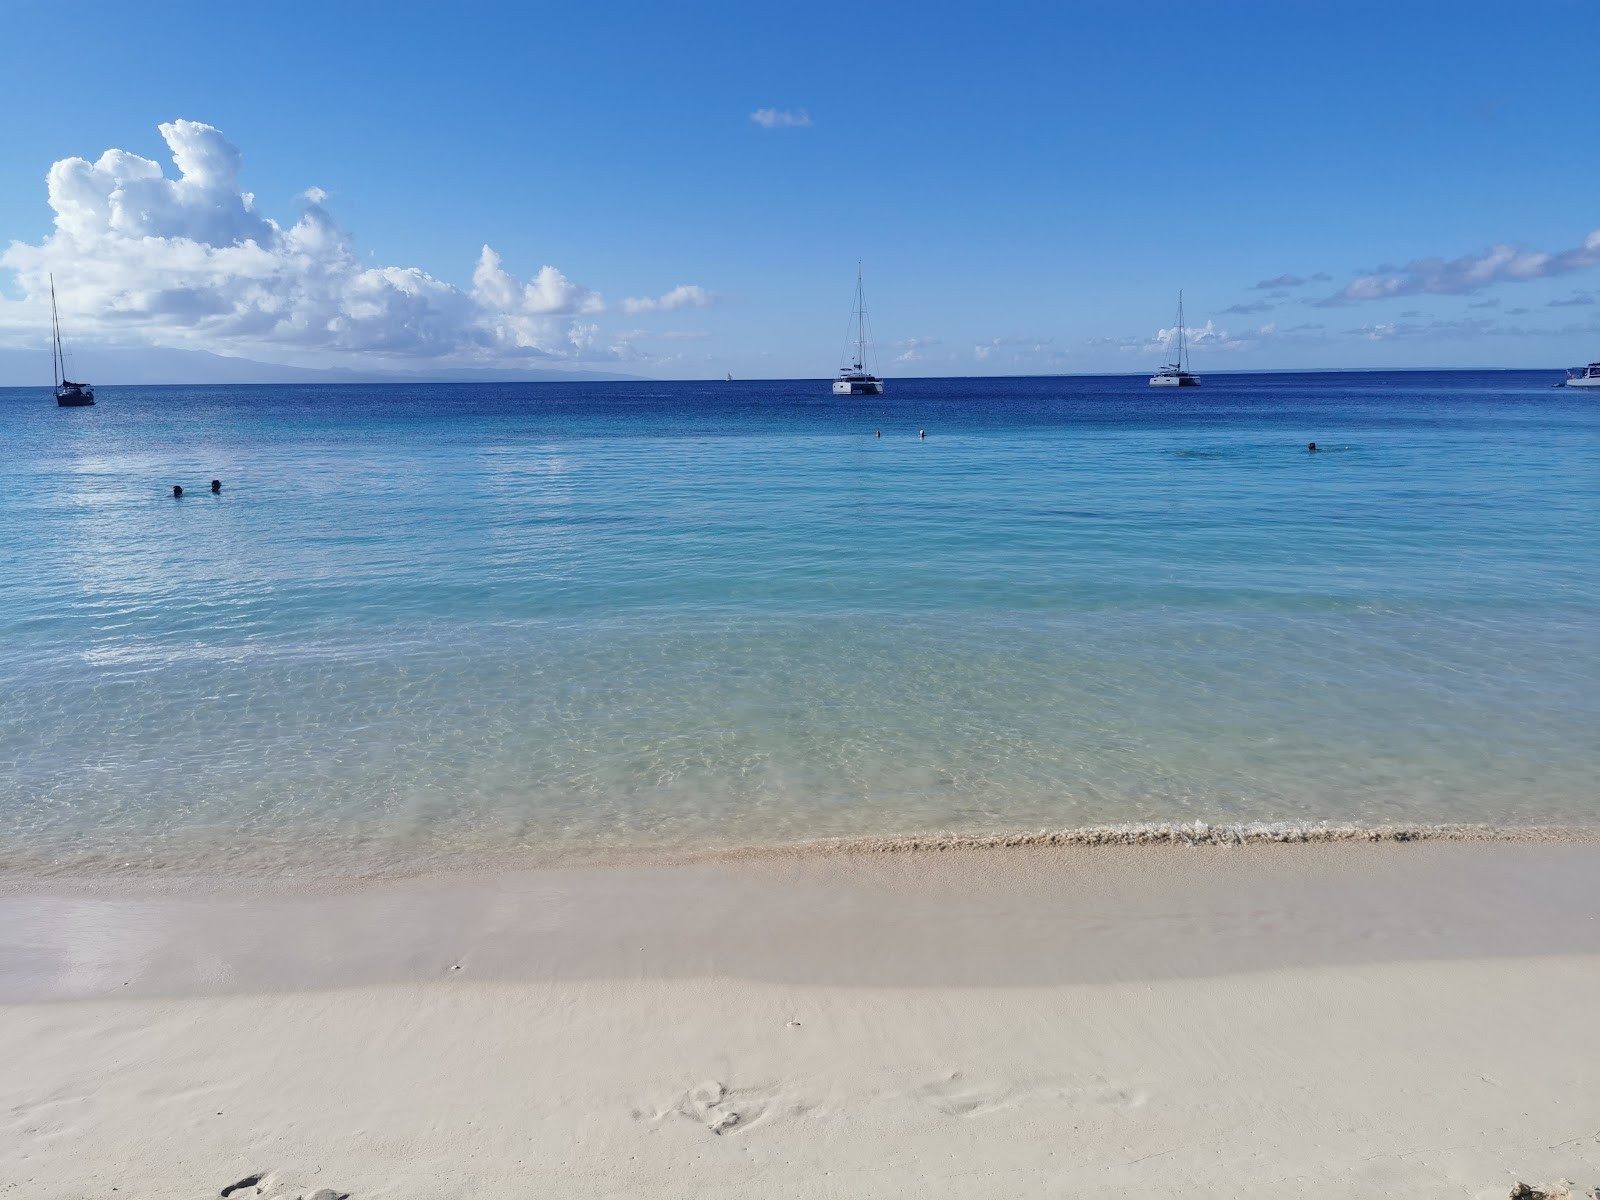 Photo de Marie Galante beach - endroit populaire parmi les connaisseurs de la détente